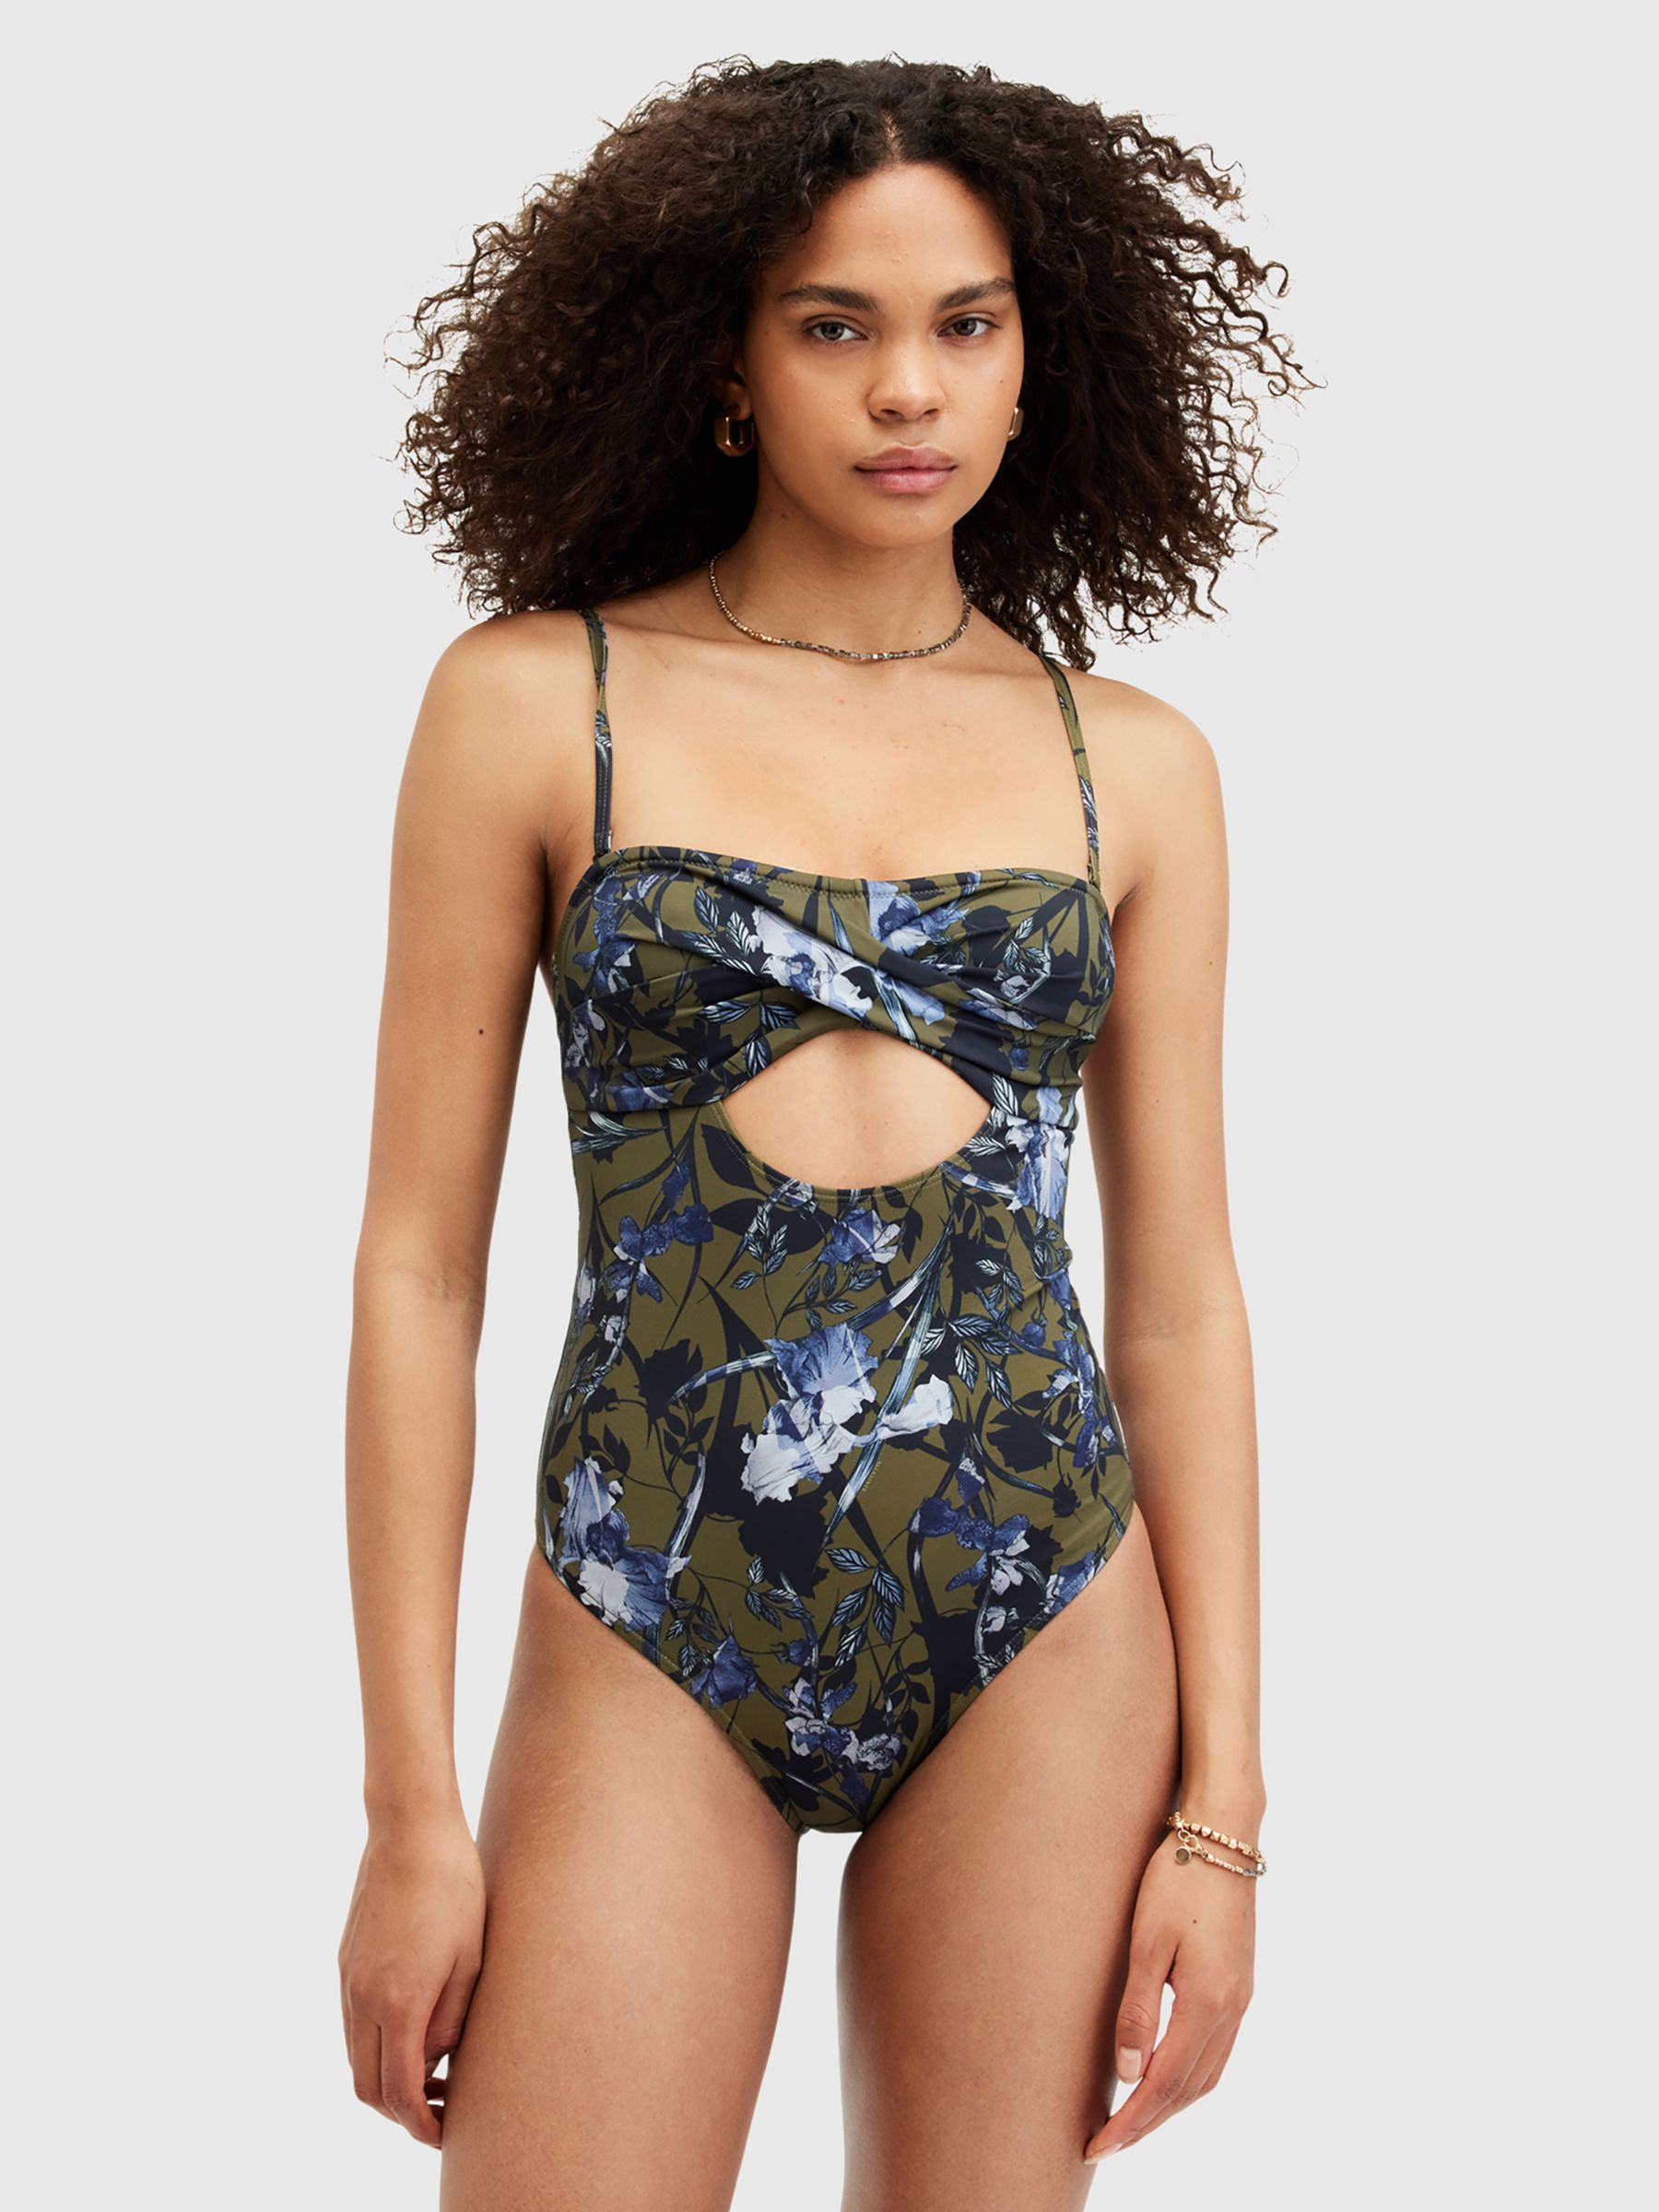 AllSaints Tatum Floral Print Bandeau Cut-Out Swimsuit, Batu Khaki Green, L